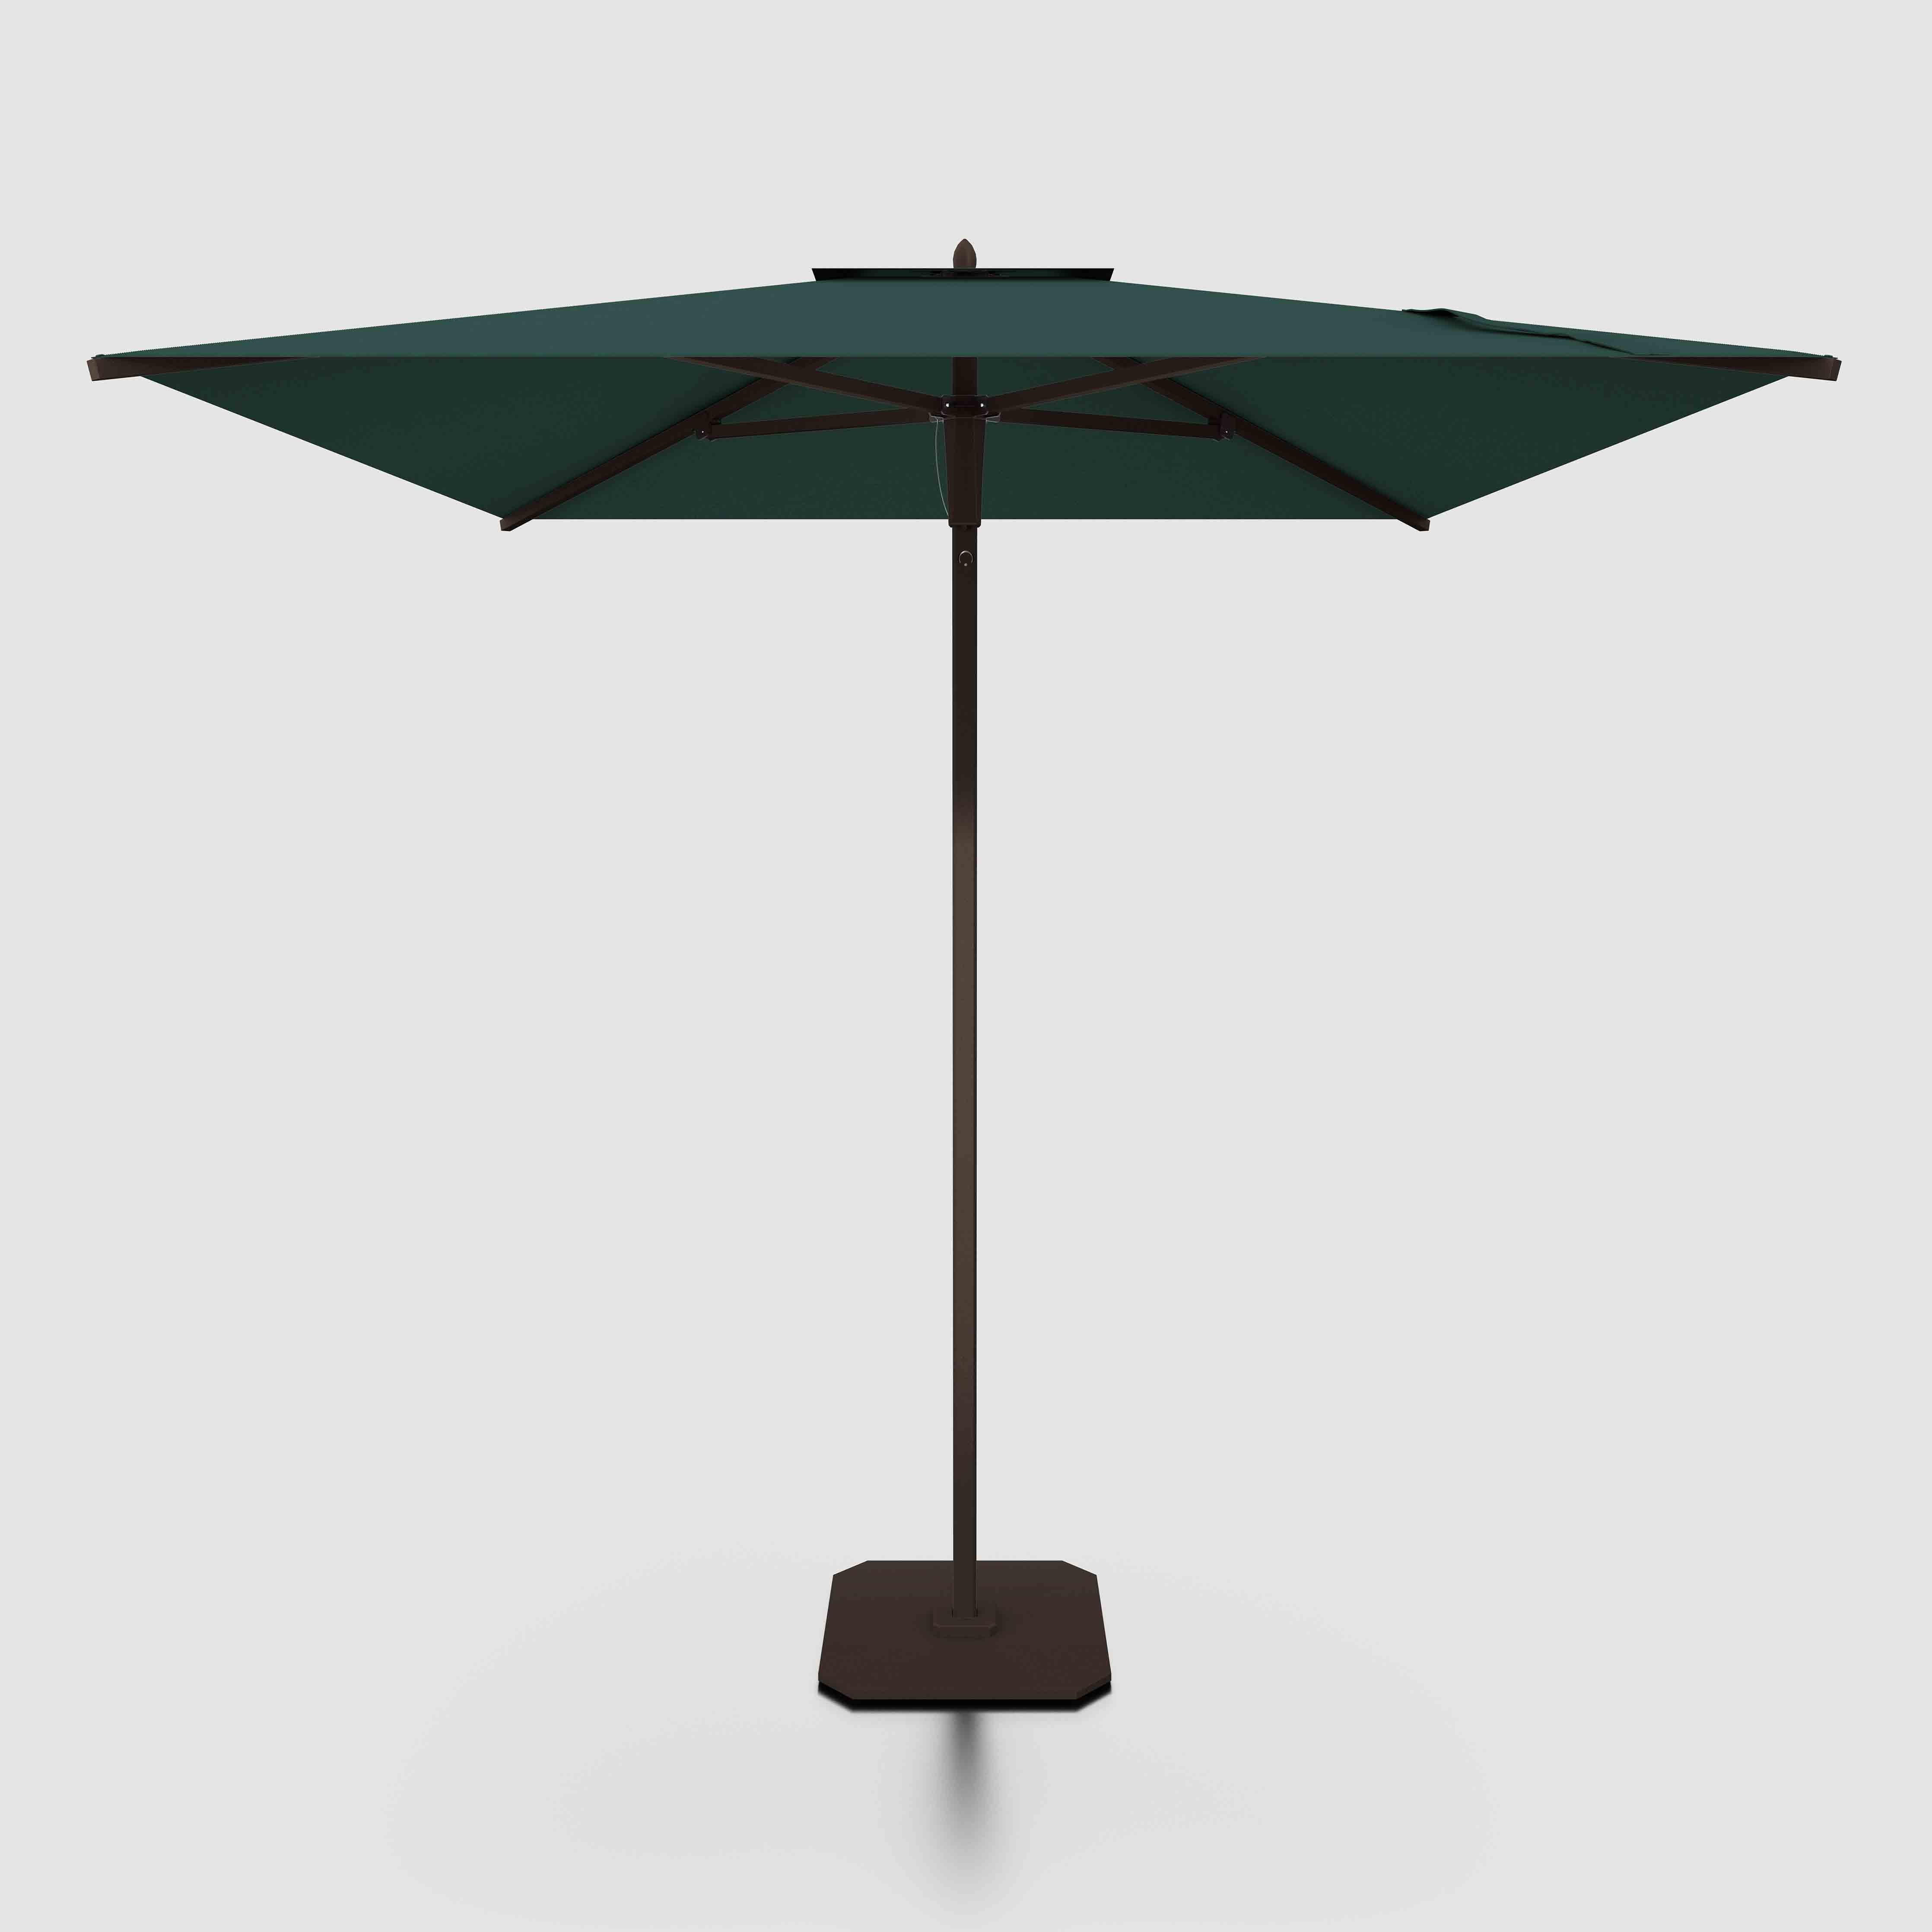 The Slight™ - Sunbrella Verde Bosque